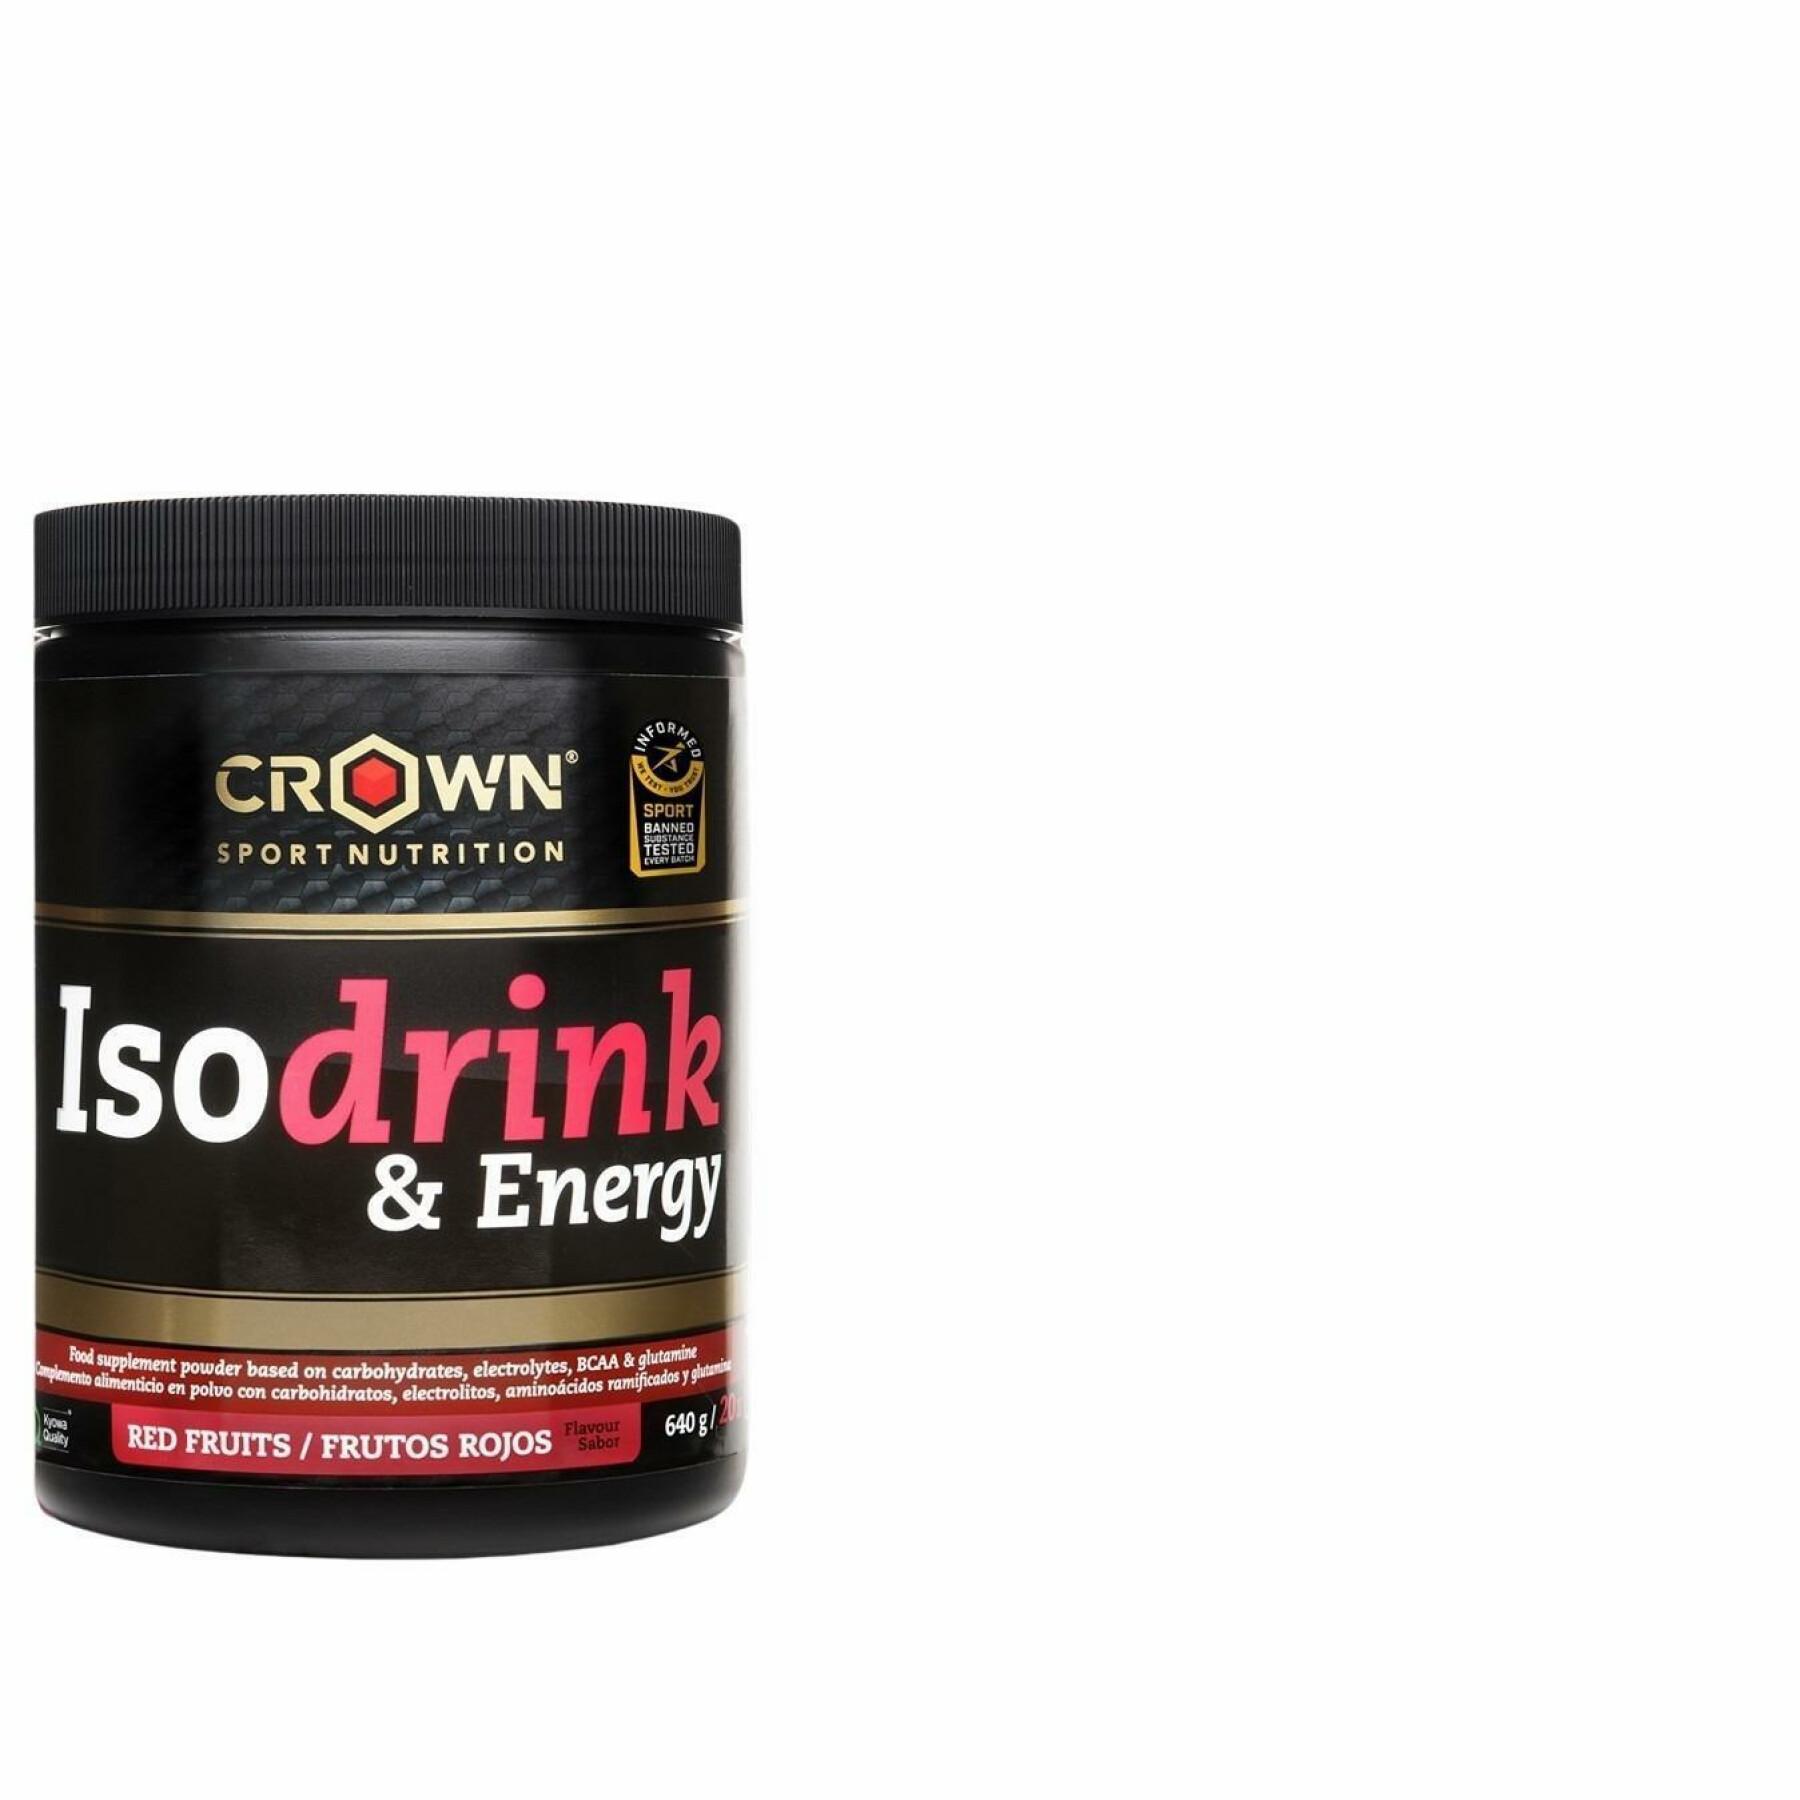 Bebida energética Crown Sport Nutrition Isodrink & Energy informed sport - fruits rouges - 640 g